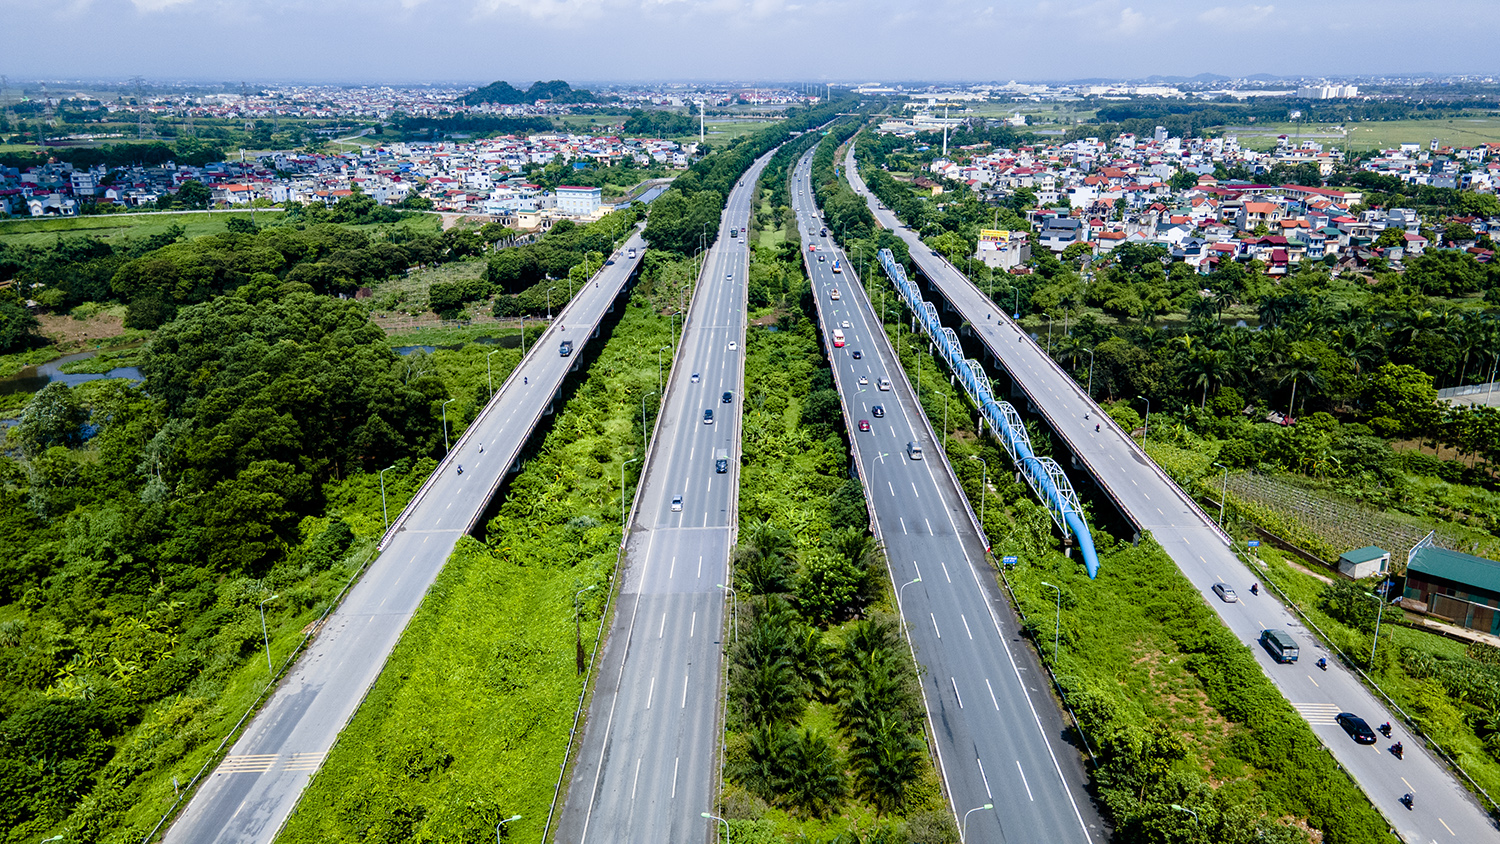 Đại lộ hiện đại nhất Việt Nam đẹp ngỡ ngàng nhìn từ trên cao - 7